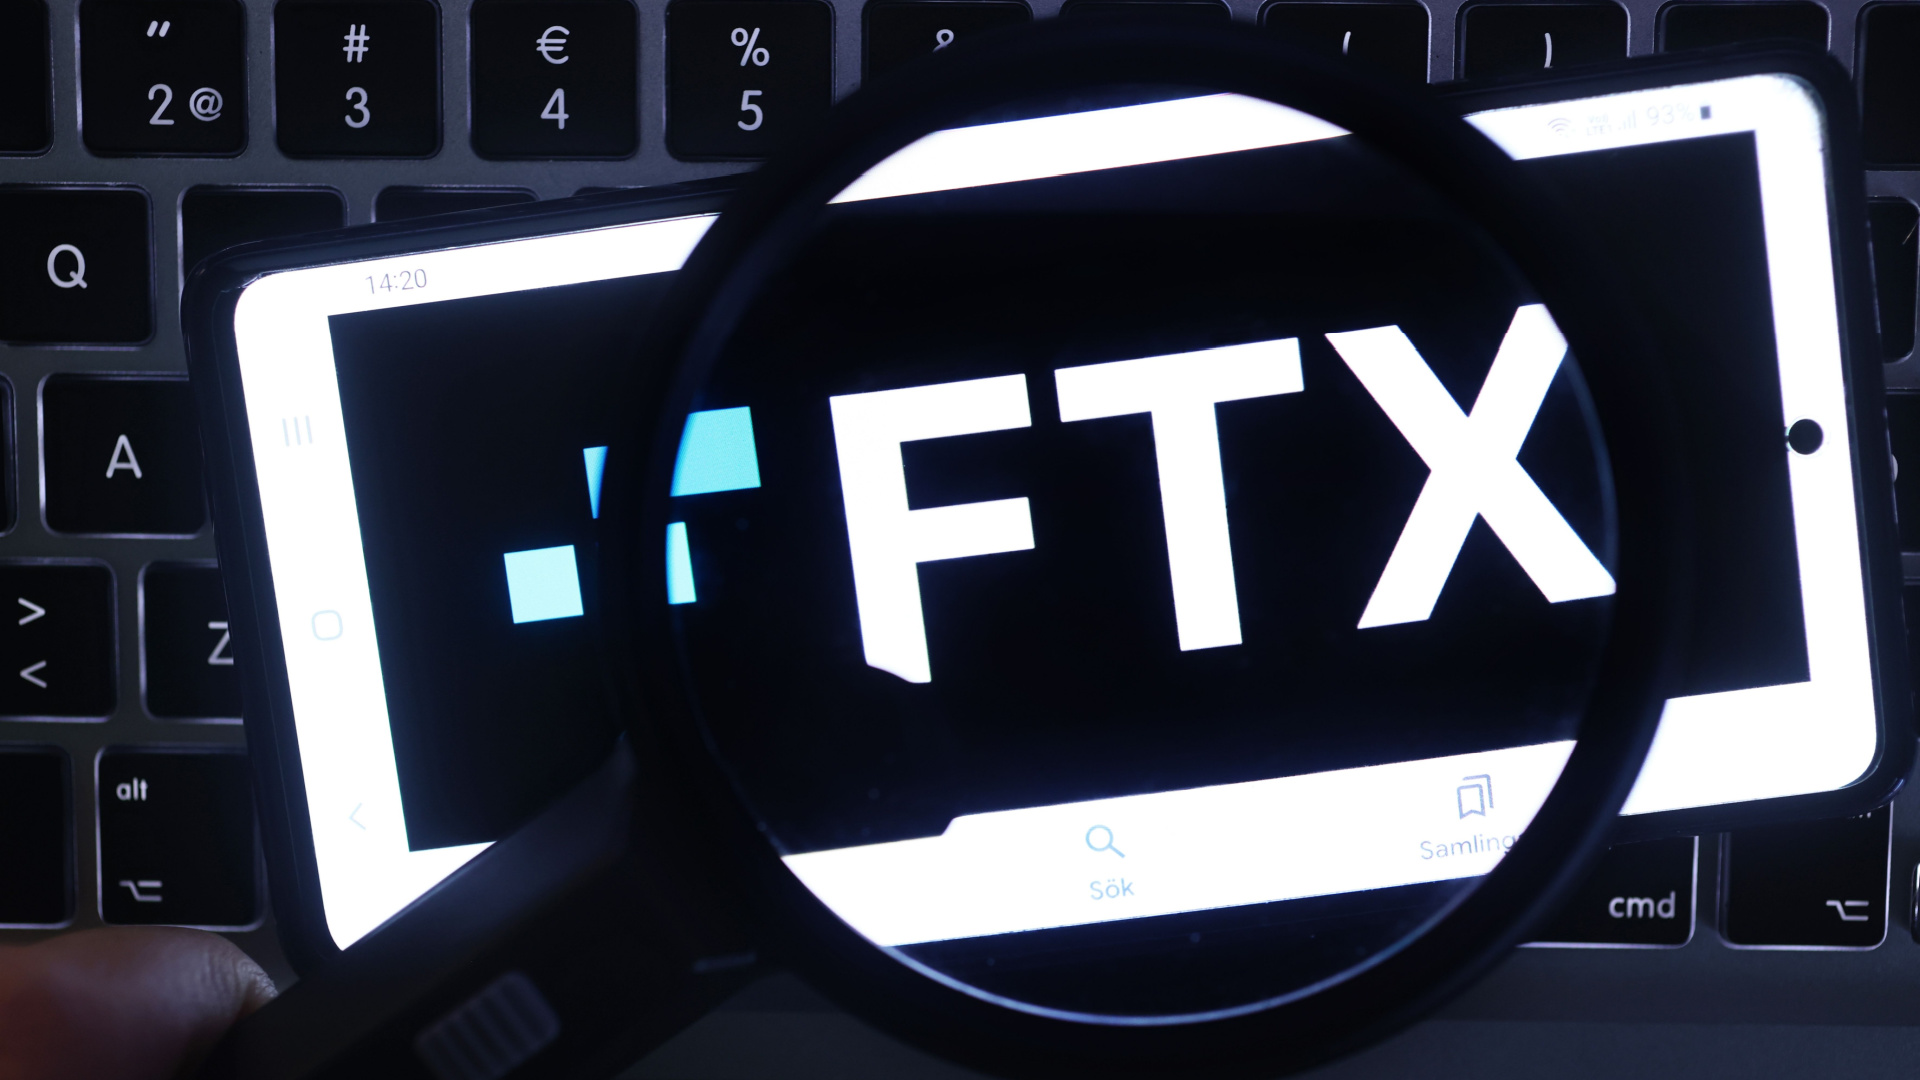 Ftx Hesaplarından Milyon Dolarlık Transfer Hareketi Gerçekleşti!